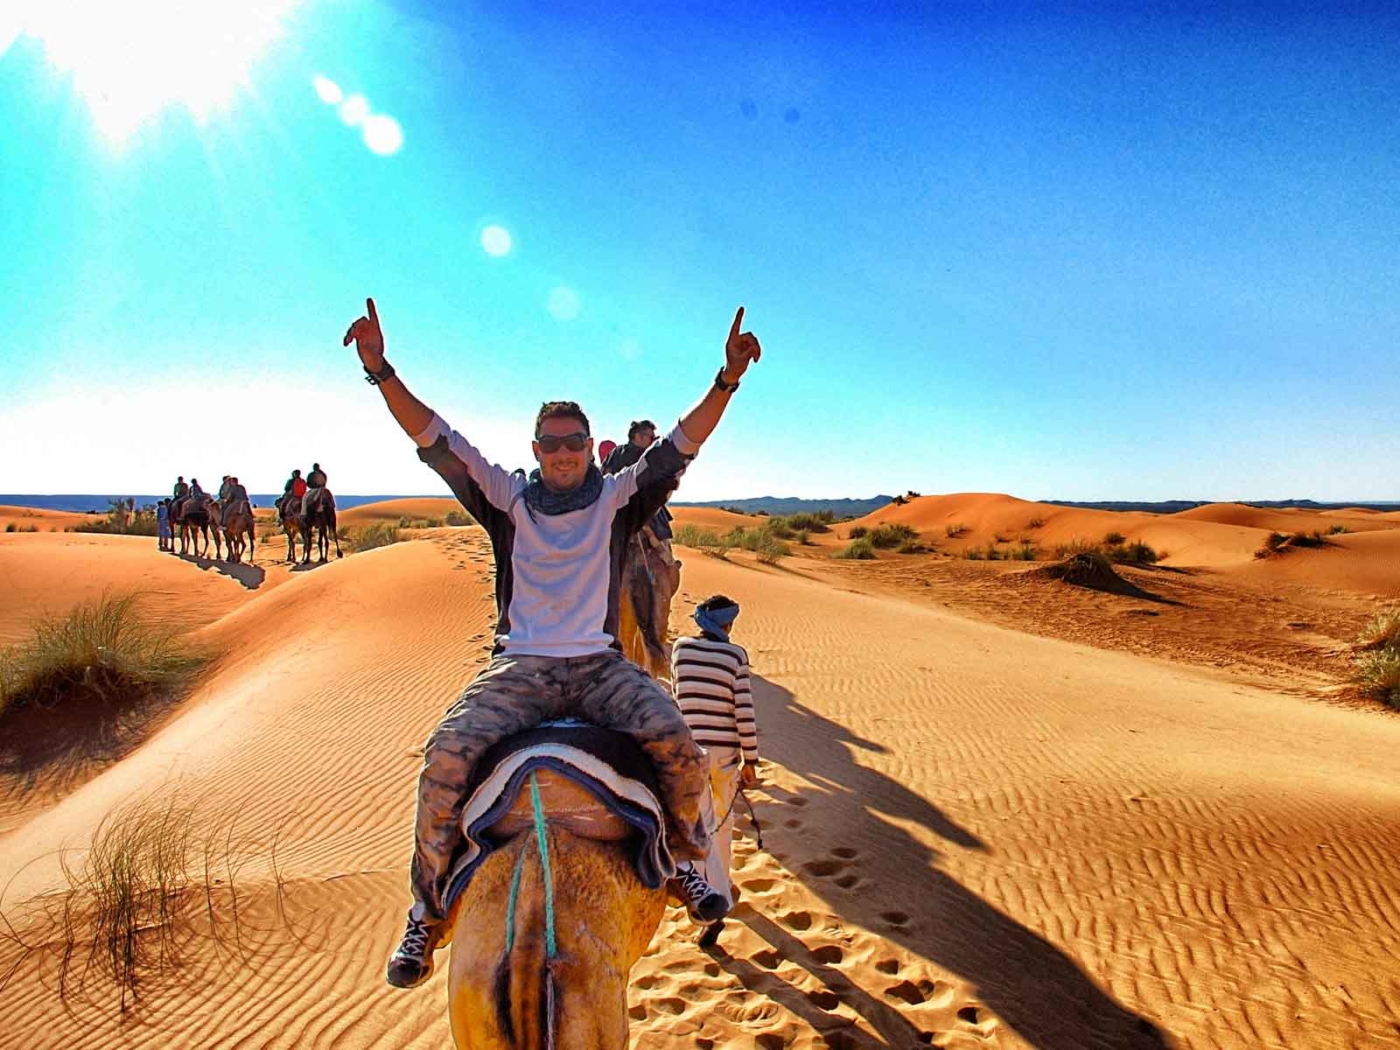 5 days marrakech desert tours